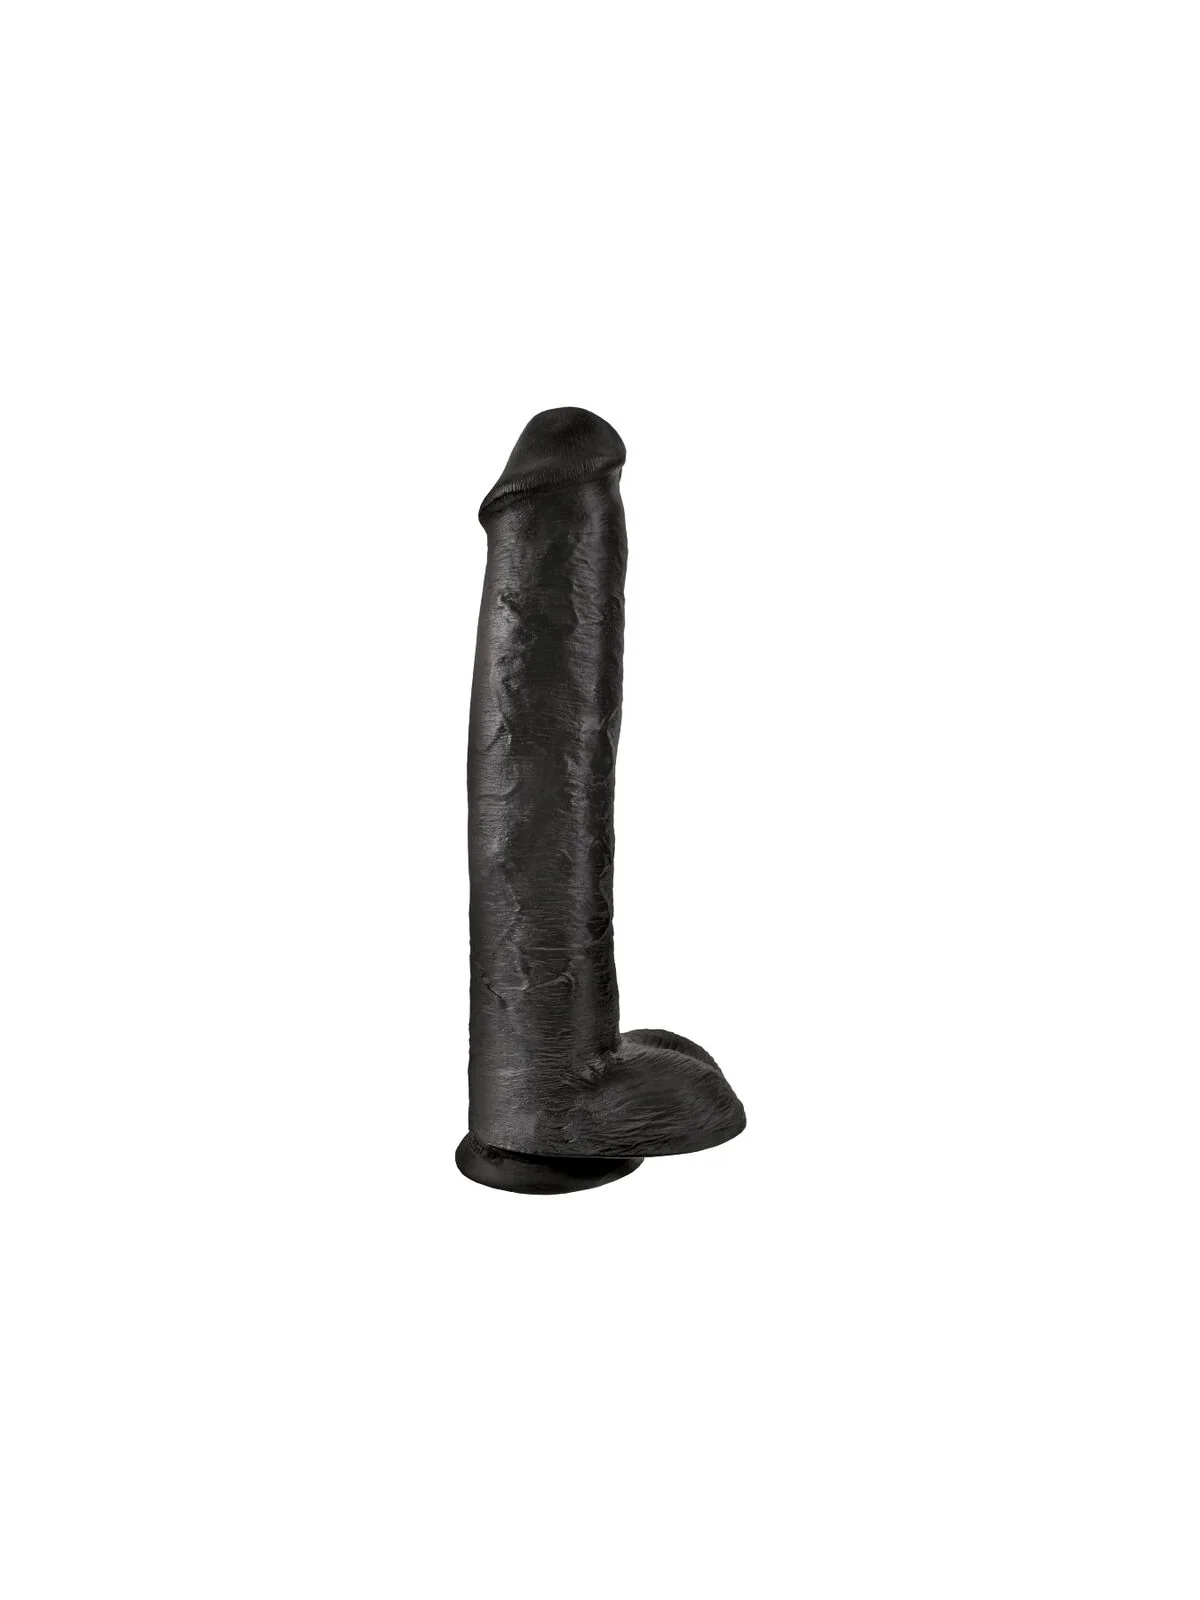 King Cock - Realistischer Penis mit Eier 34,2 Cm Schwarz von King Cock